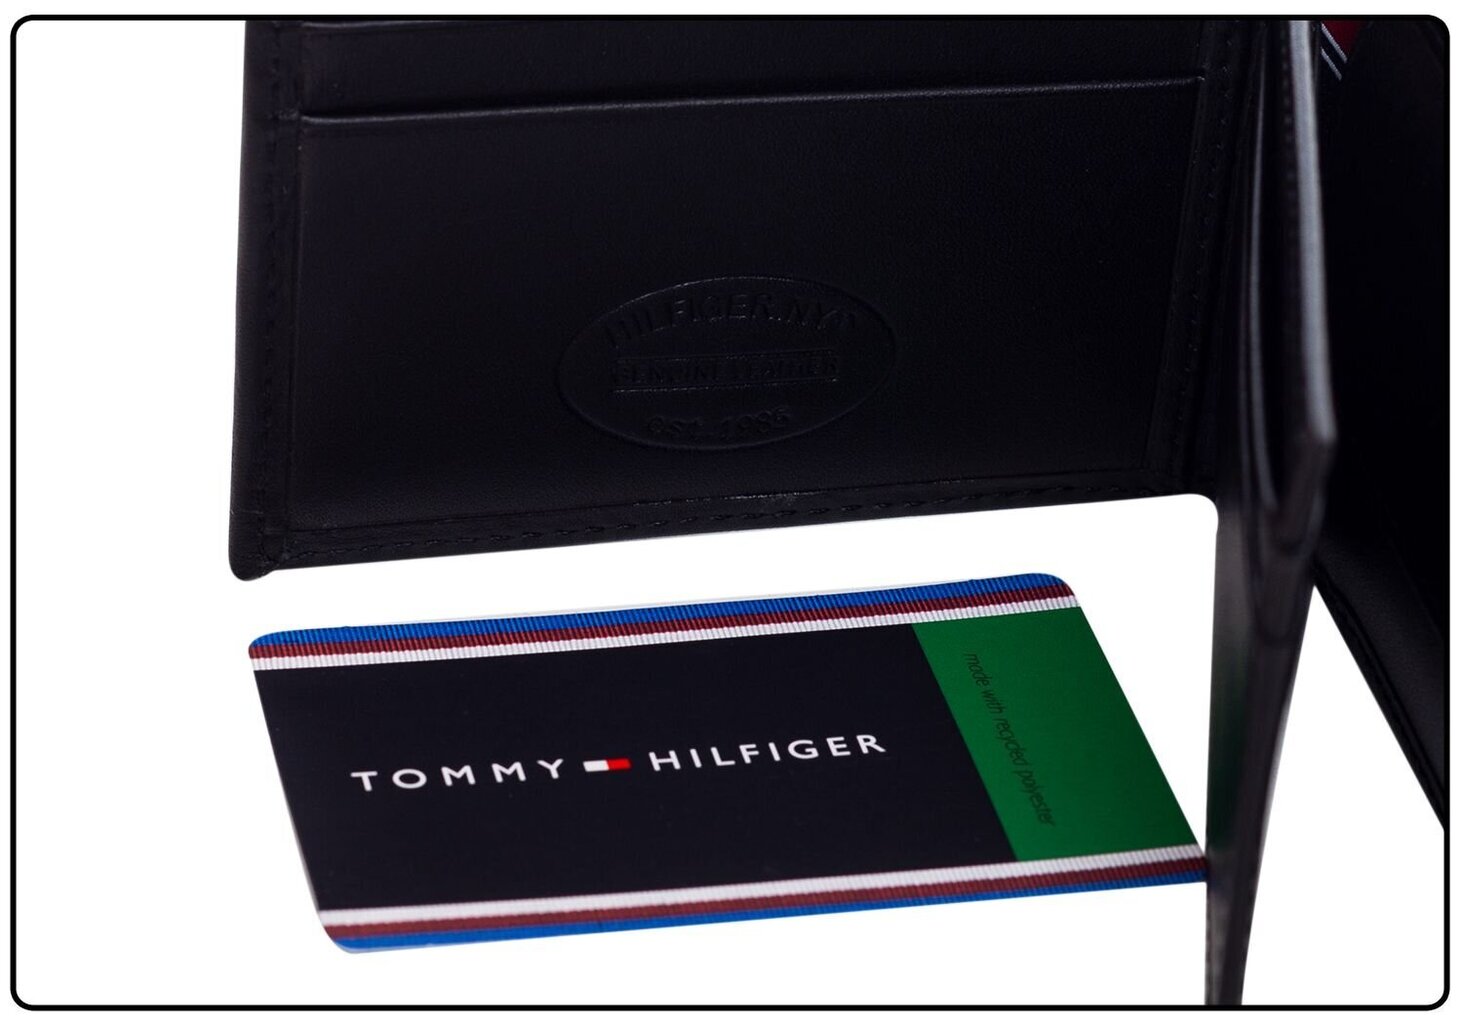 Meeste rahakott Tommy Hilfiger ETON MINI FLAP BLACK AM0AM00671 002 35706 цена и информация | Meeste rahakotid | kaup24.ee